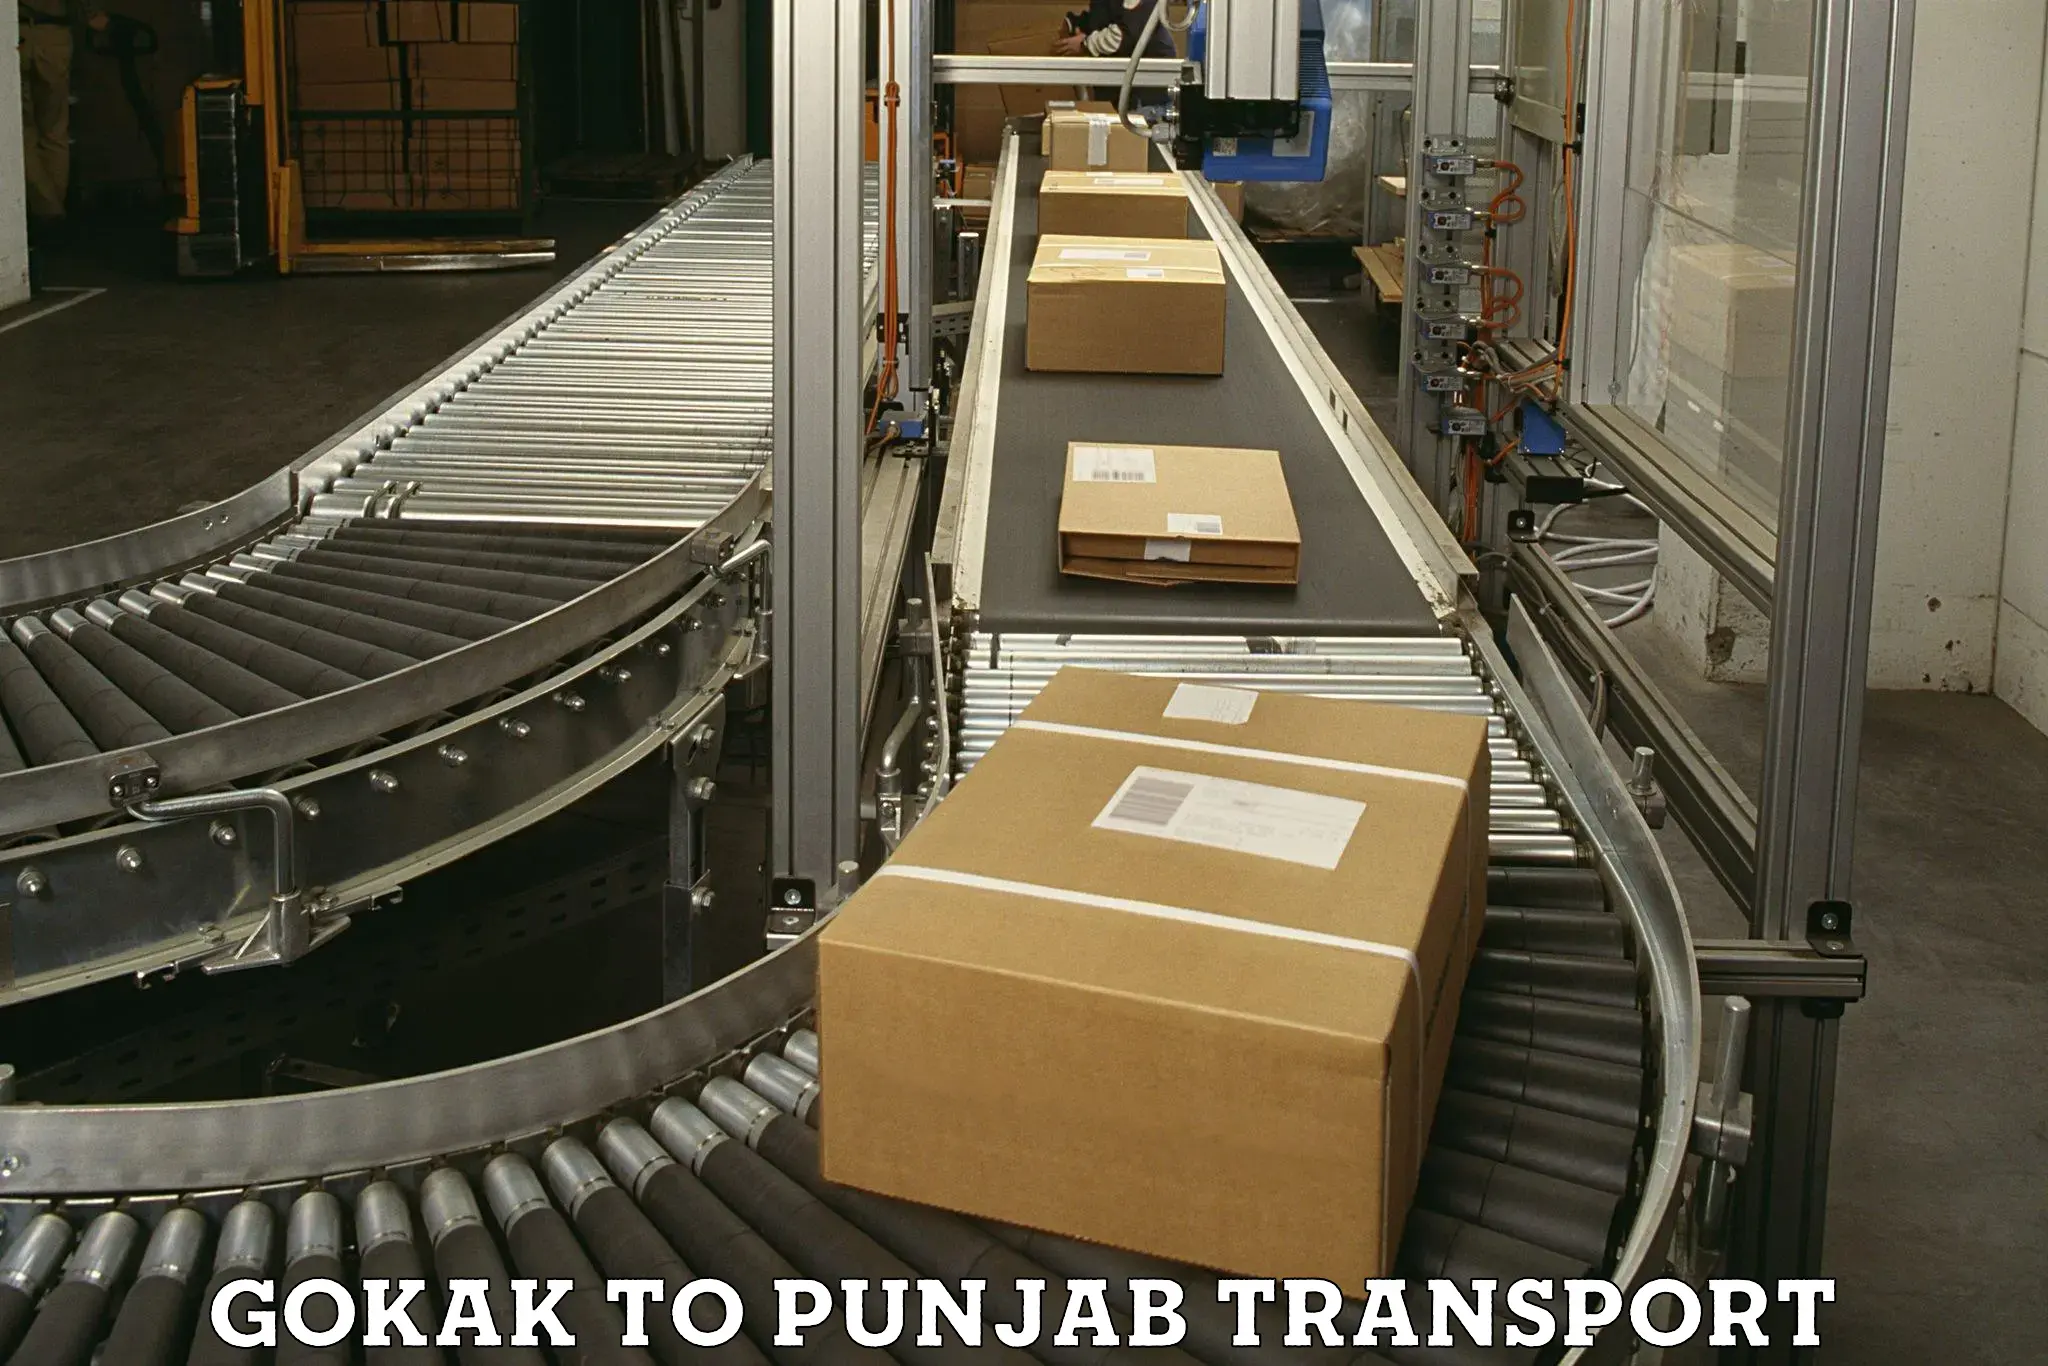 Furniture transport service Gokak to Patiala